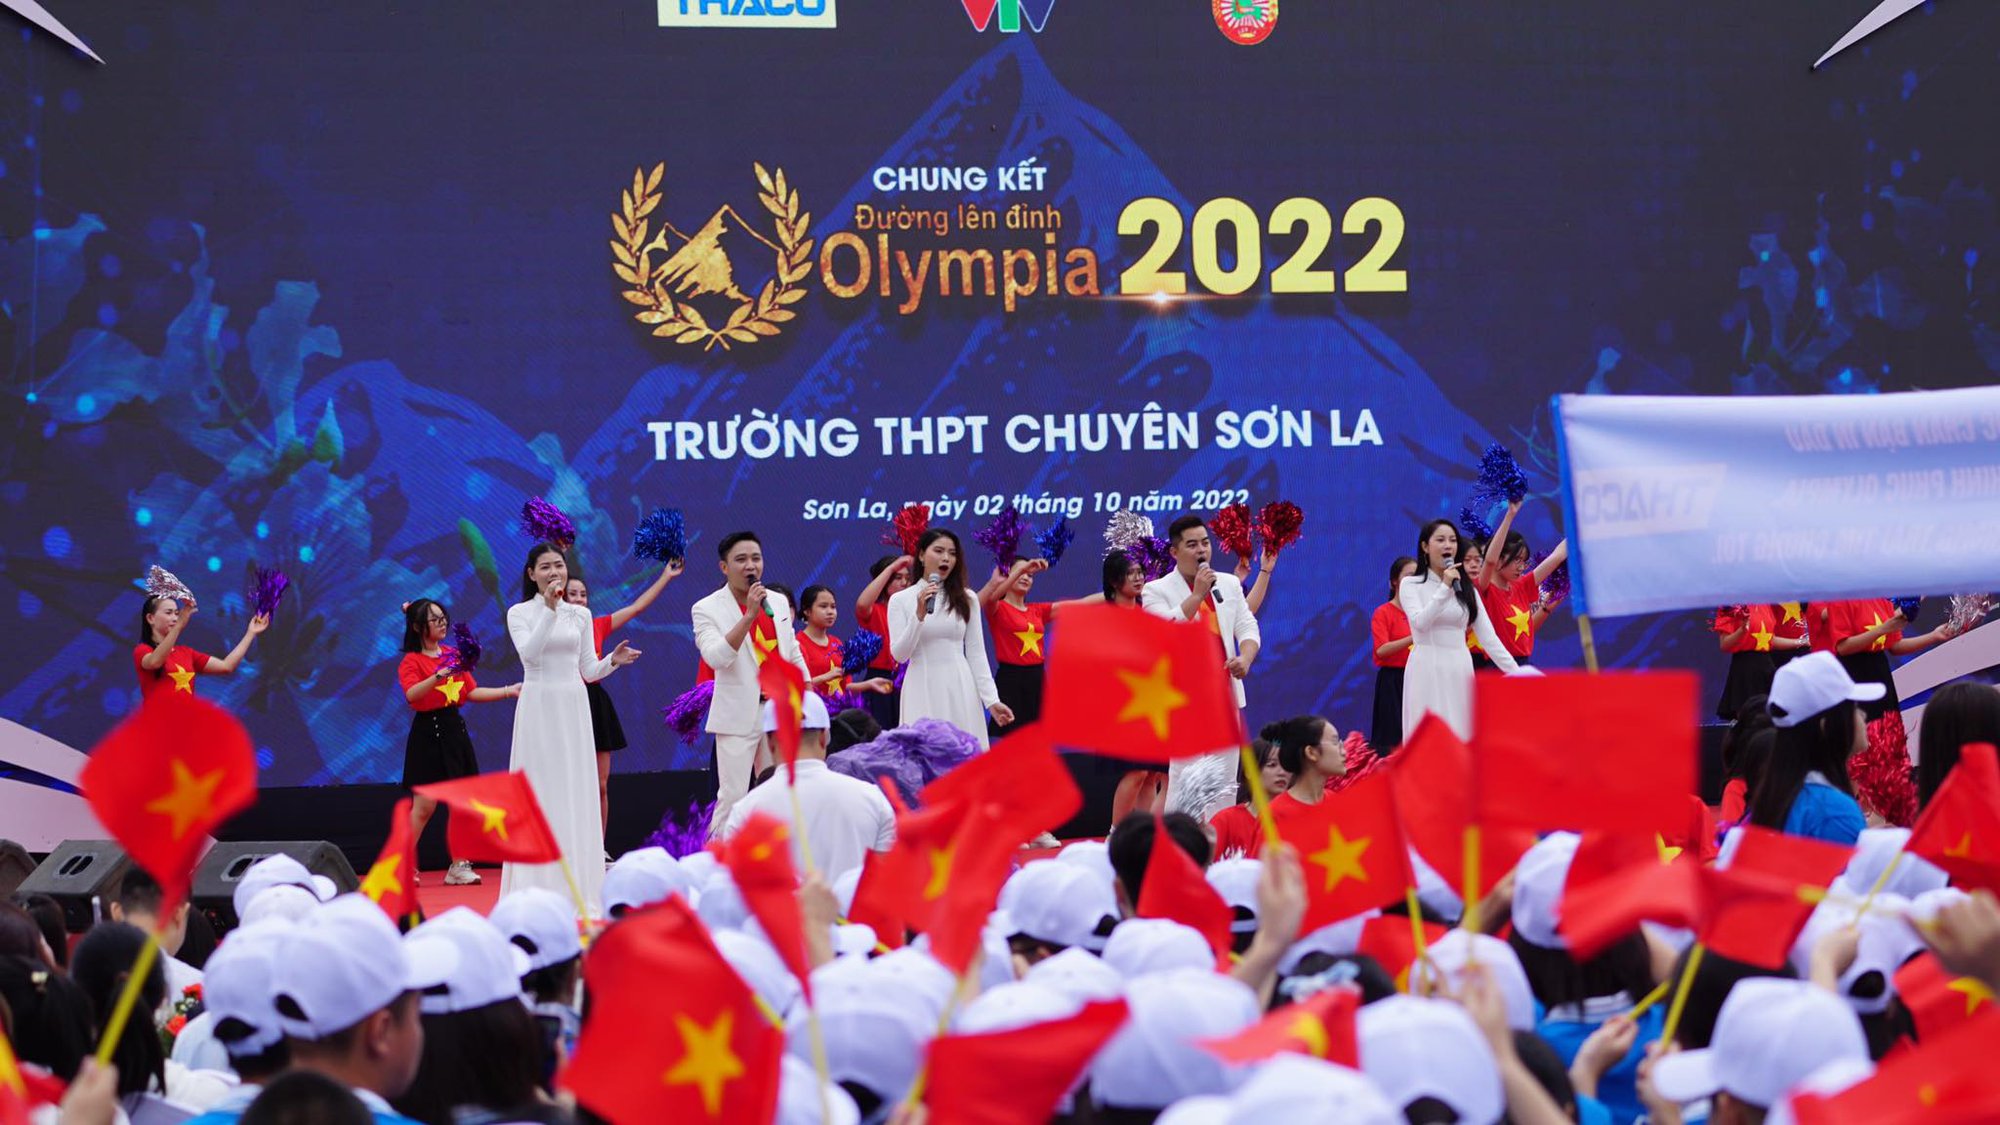 Chung kết Đường Lên Đỉnh Olympia 2022 khép lại: Đặng Lê Nguyên Vũ vô địch một cách đầy thuyết phục! - Ảnh 30.